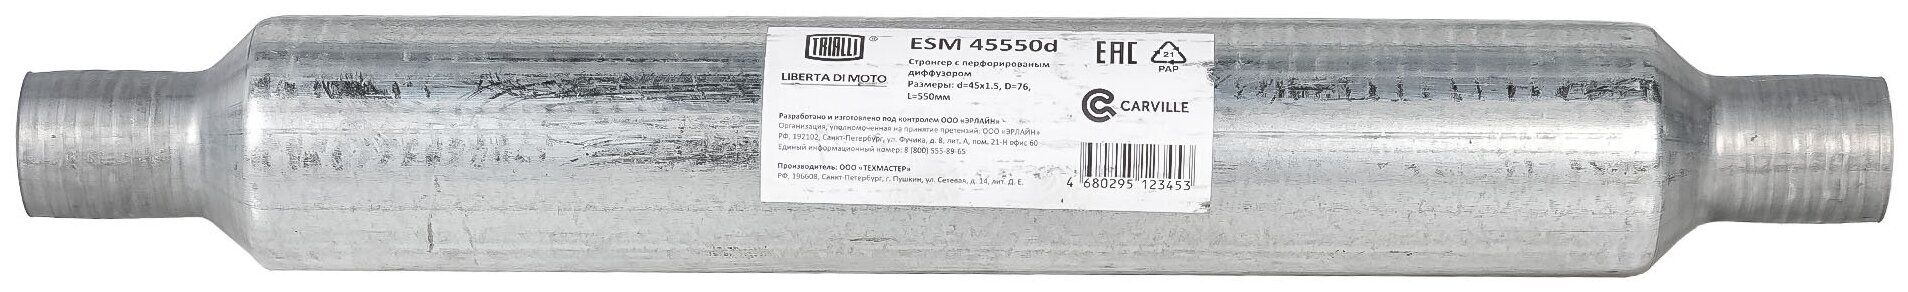 Стронгер 45550-76 с перфорированным диффузором (алюминизированная сталь) ESM 45550d TRIALLI